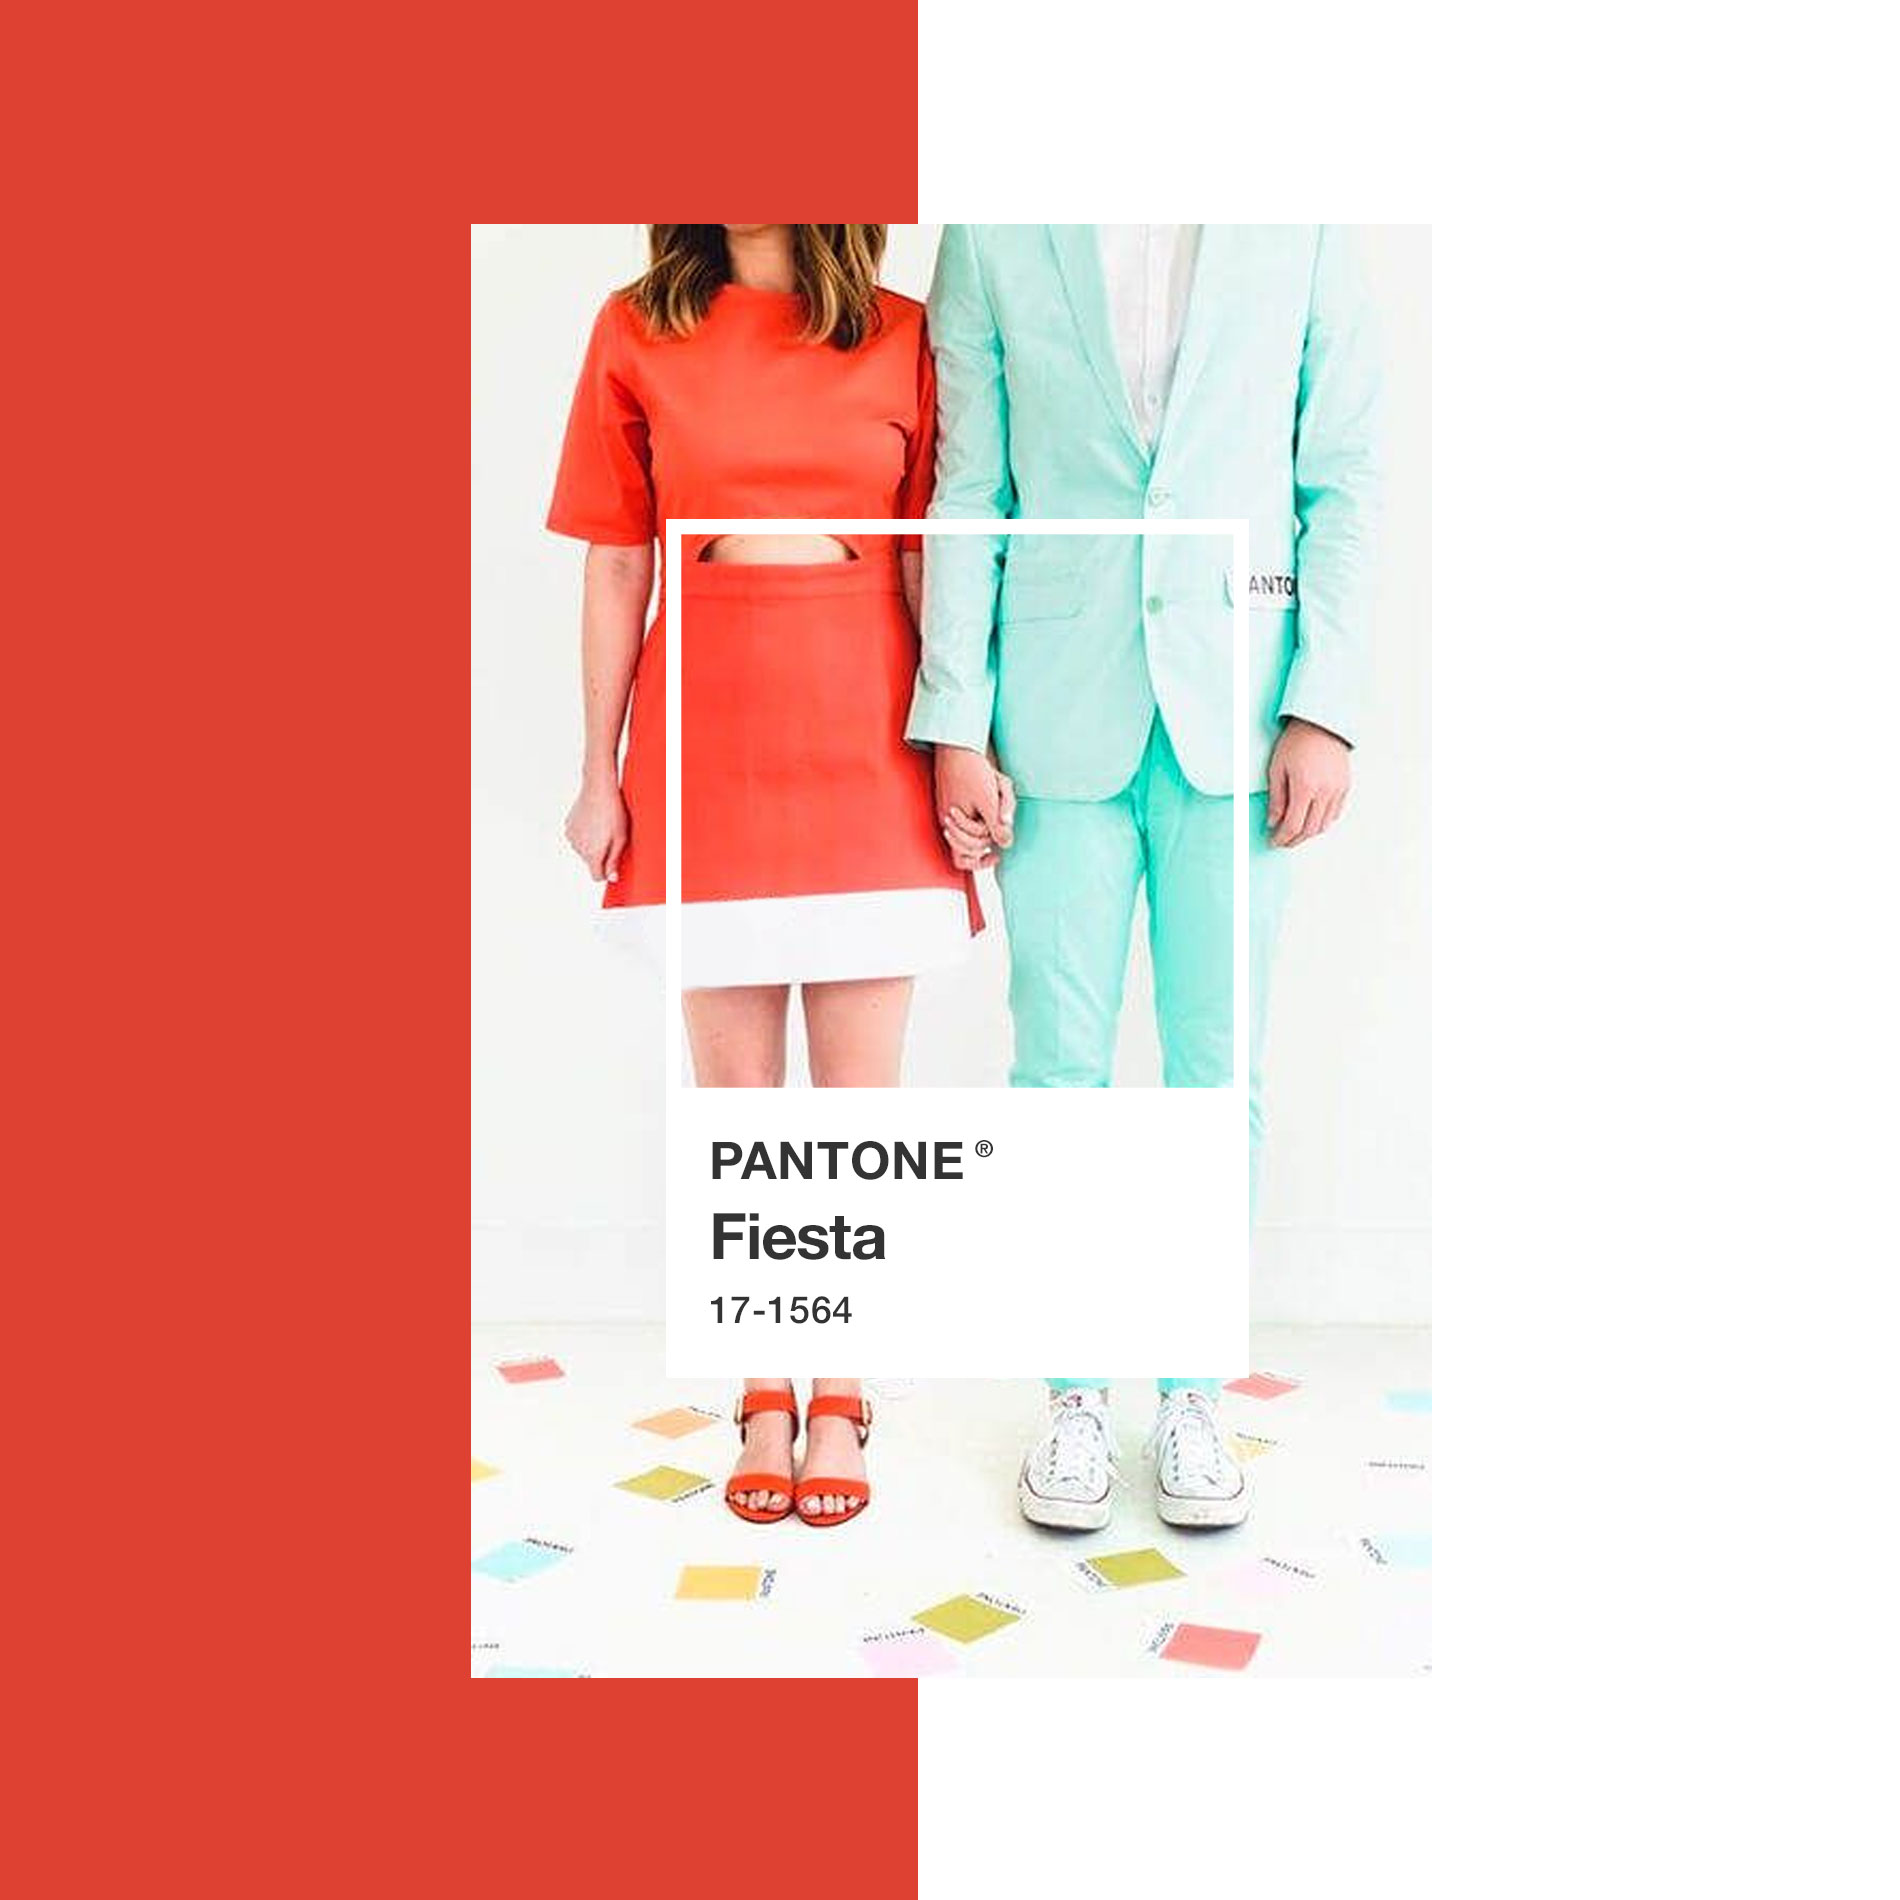 Colores primaverales según Pantone: rojo fiesta